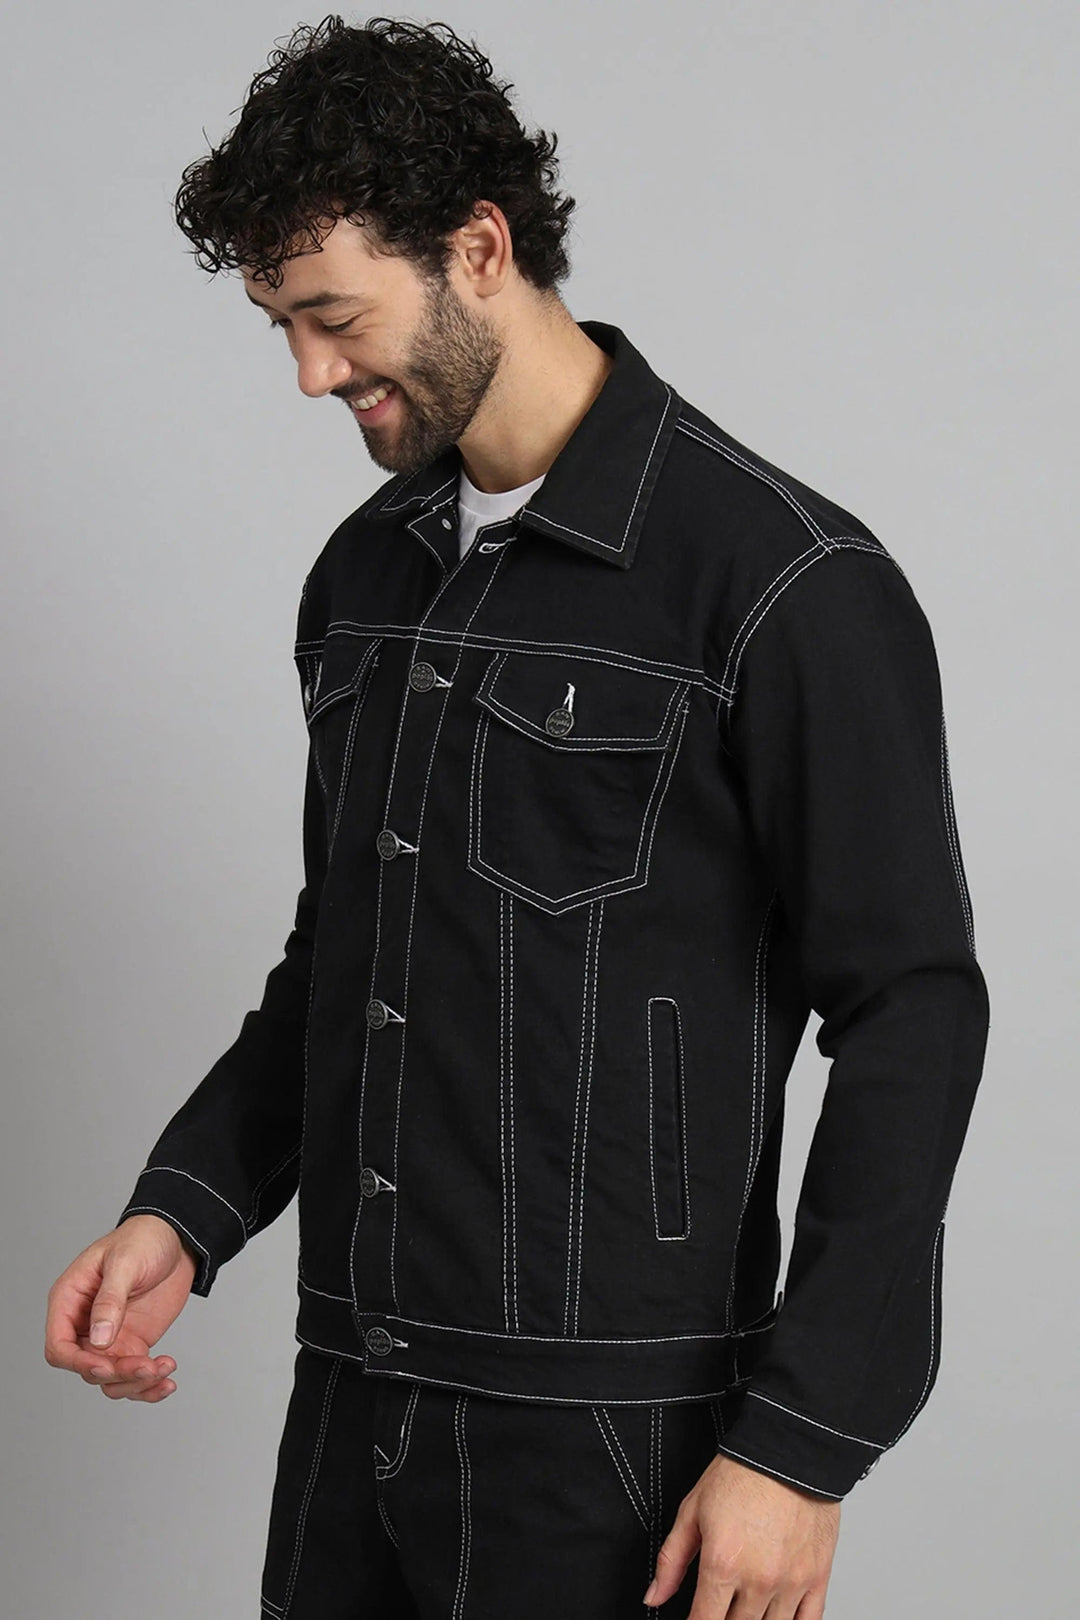 Regular Fit Black Color Denim Jacket for Men